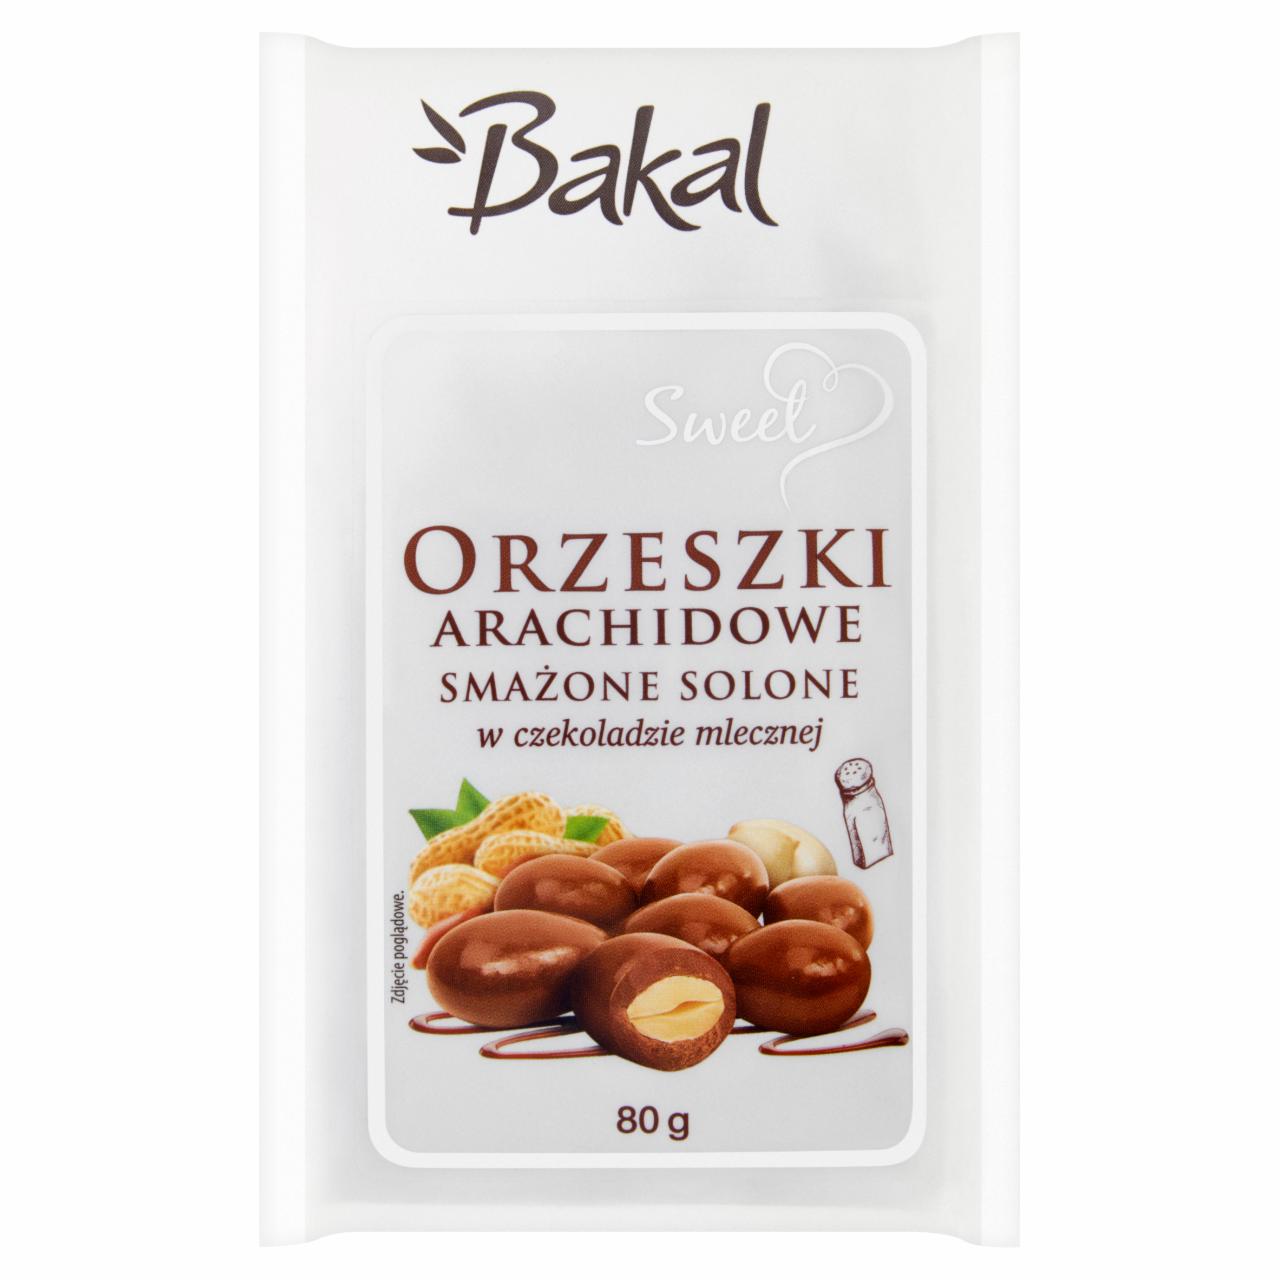 Zdjęcia - Bakal Sweet Orzeszki arachidowe smażone solone w czekoladzie mlecznej 80 g